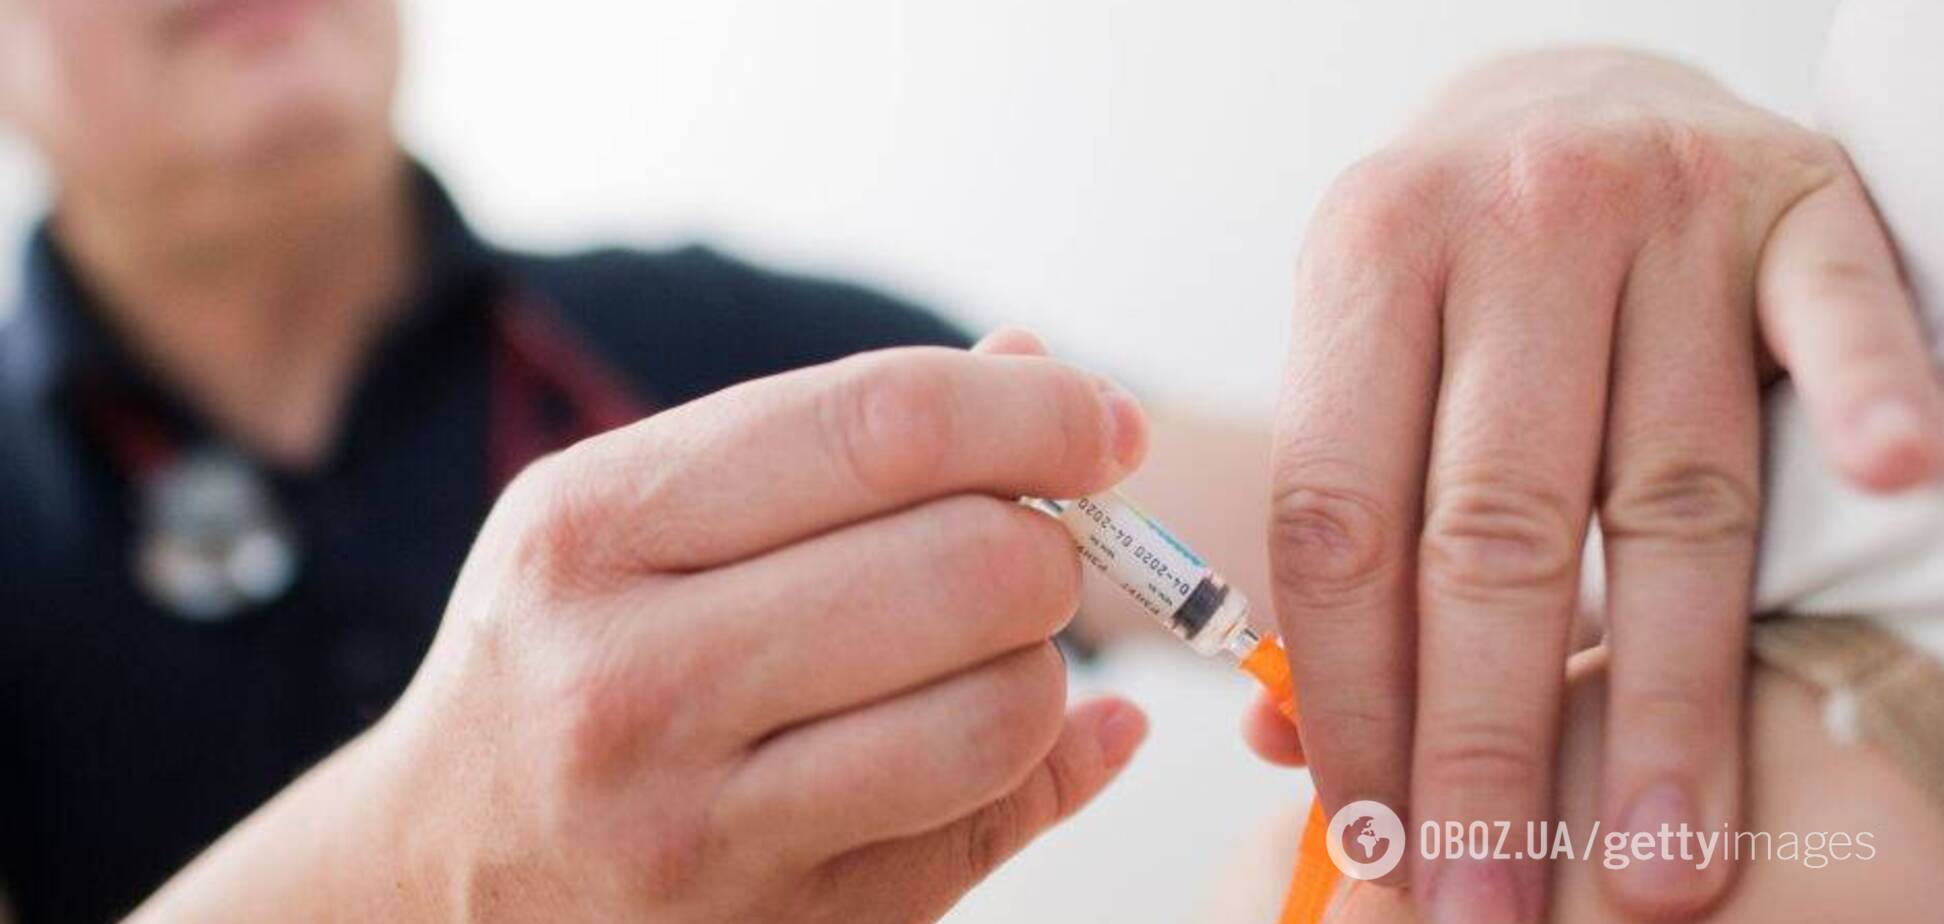 МОЗ порекомендували включити кон'юговану пневмококову вакцину в Календар щеплень